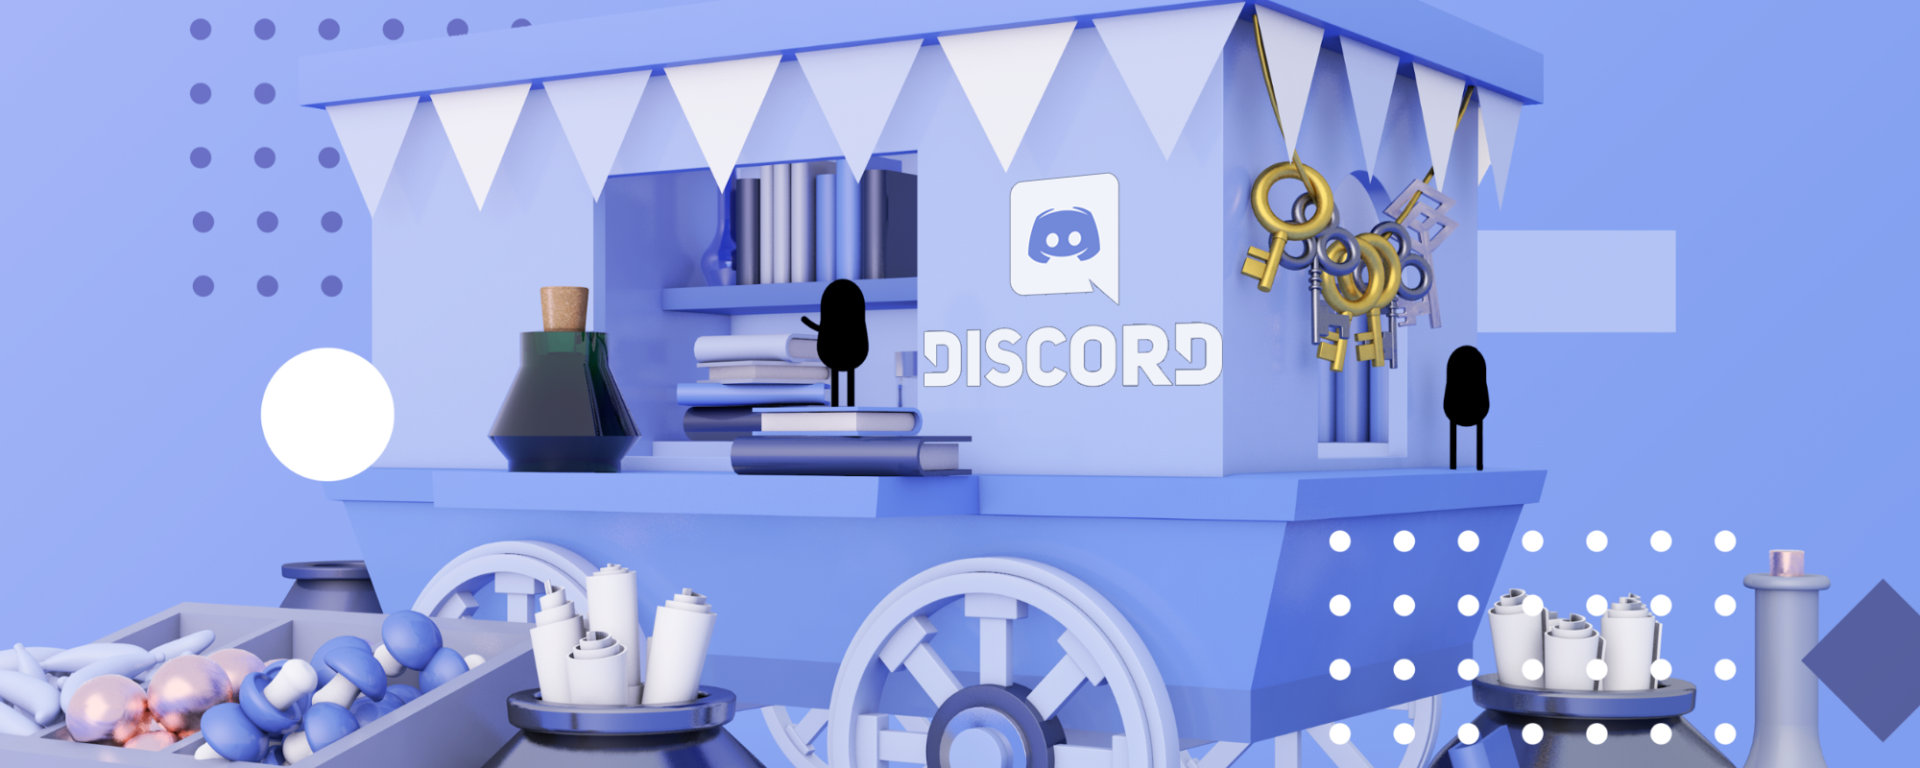 Discord anuncia la fase beta de su tienda, Discord Store ya está disponible